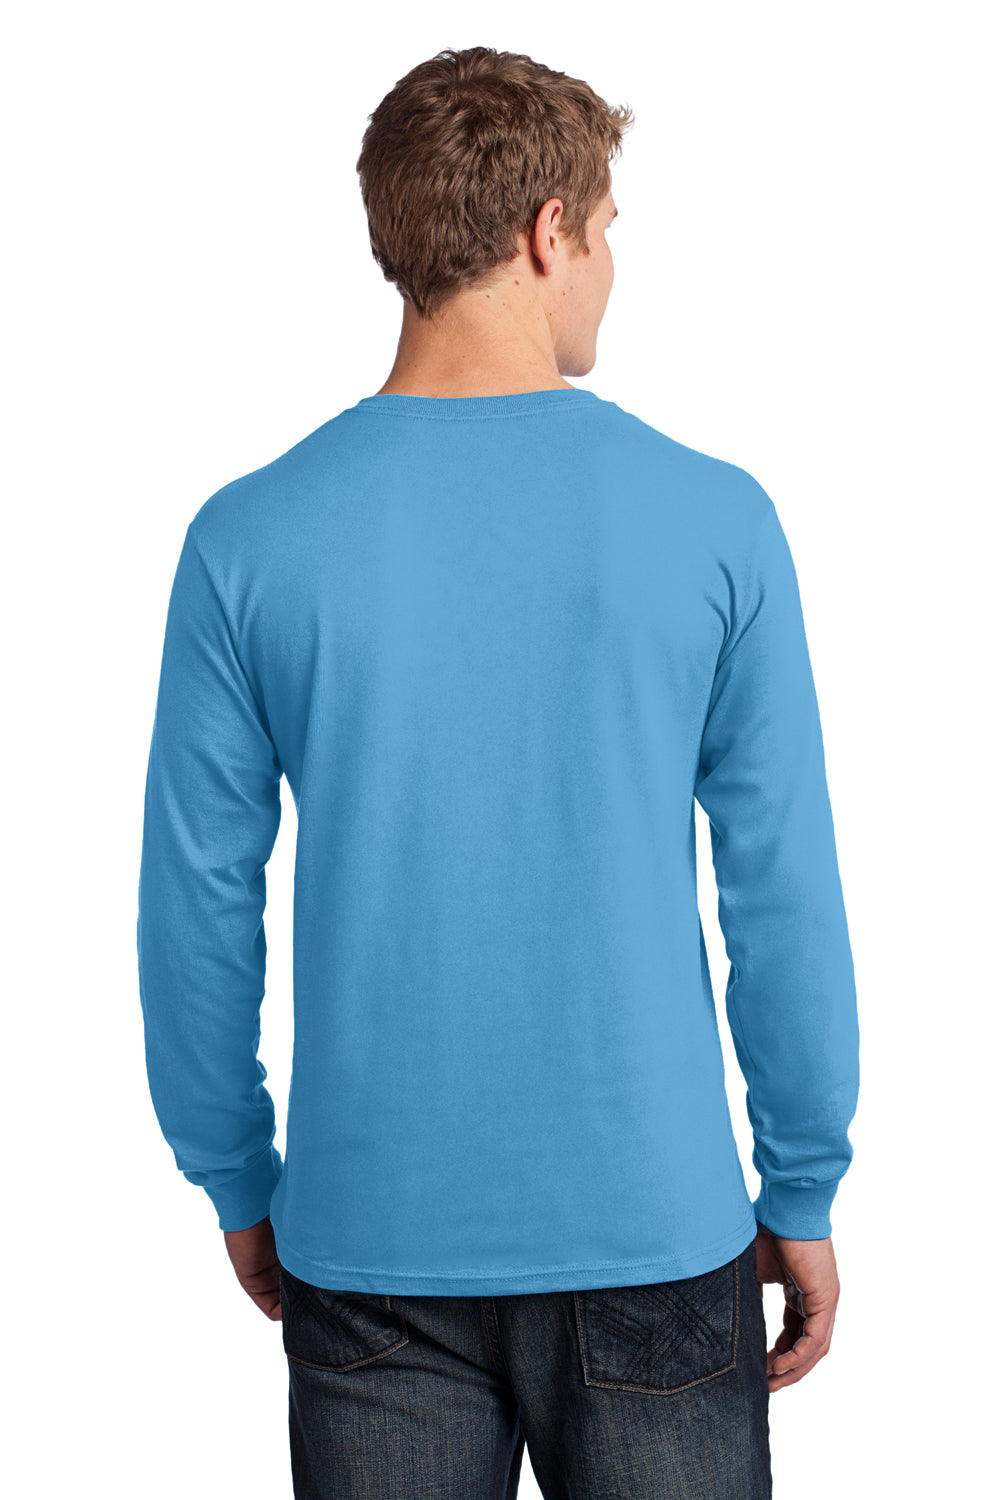 Port & Company PC54LS Mens Core Long Sleeve Crewneck T-Shirt Aqua Blue Back